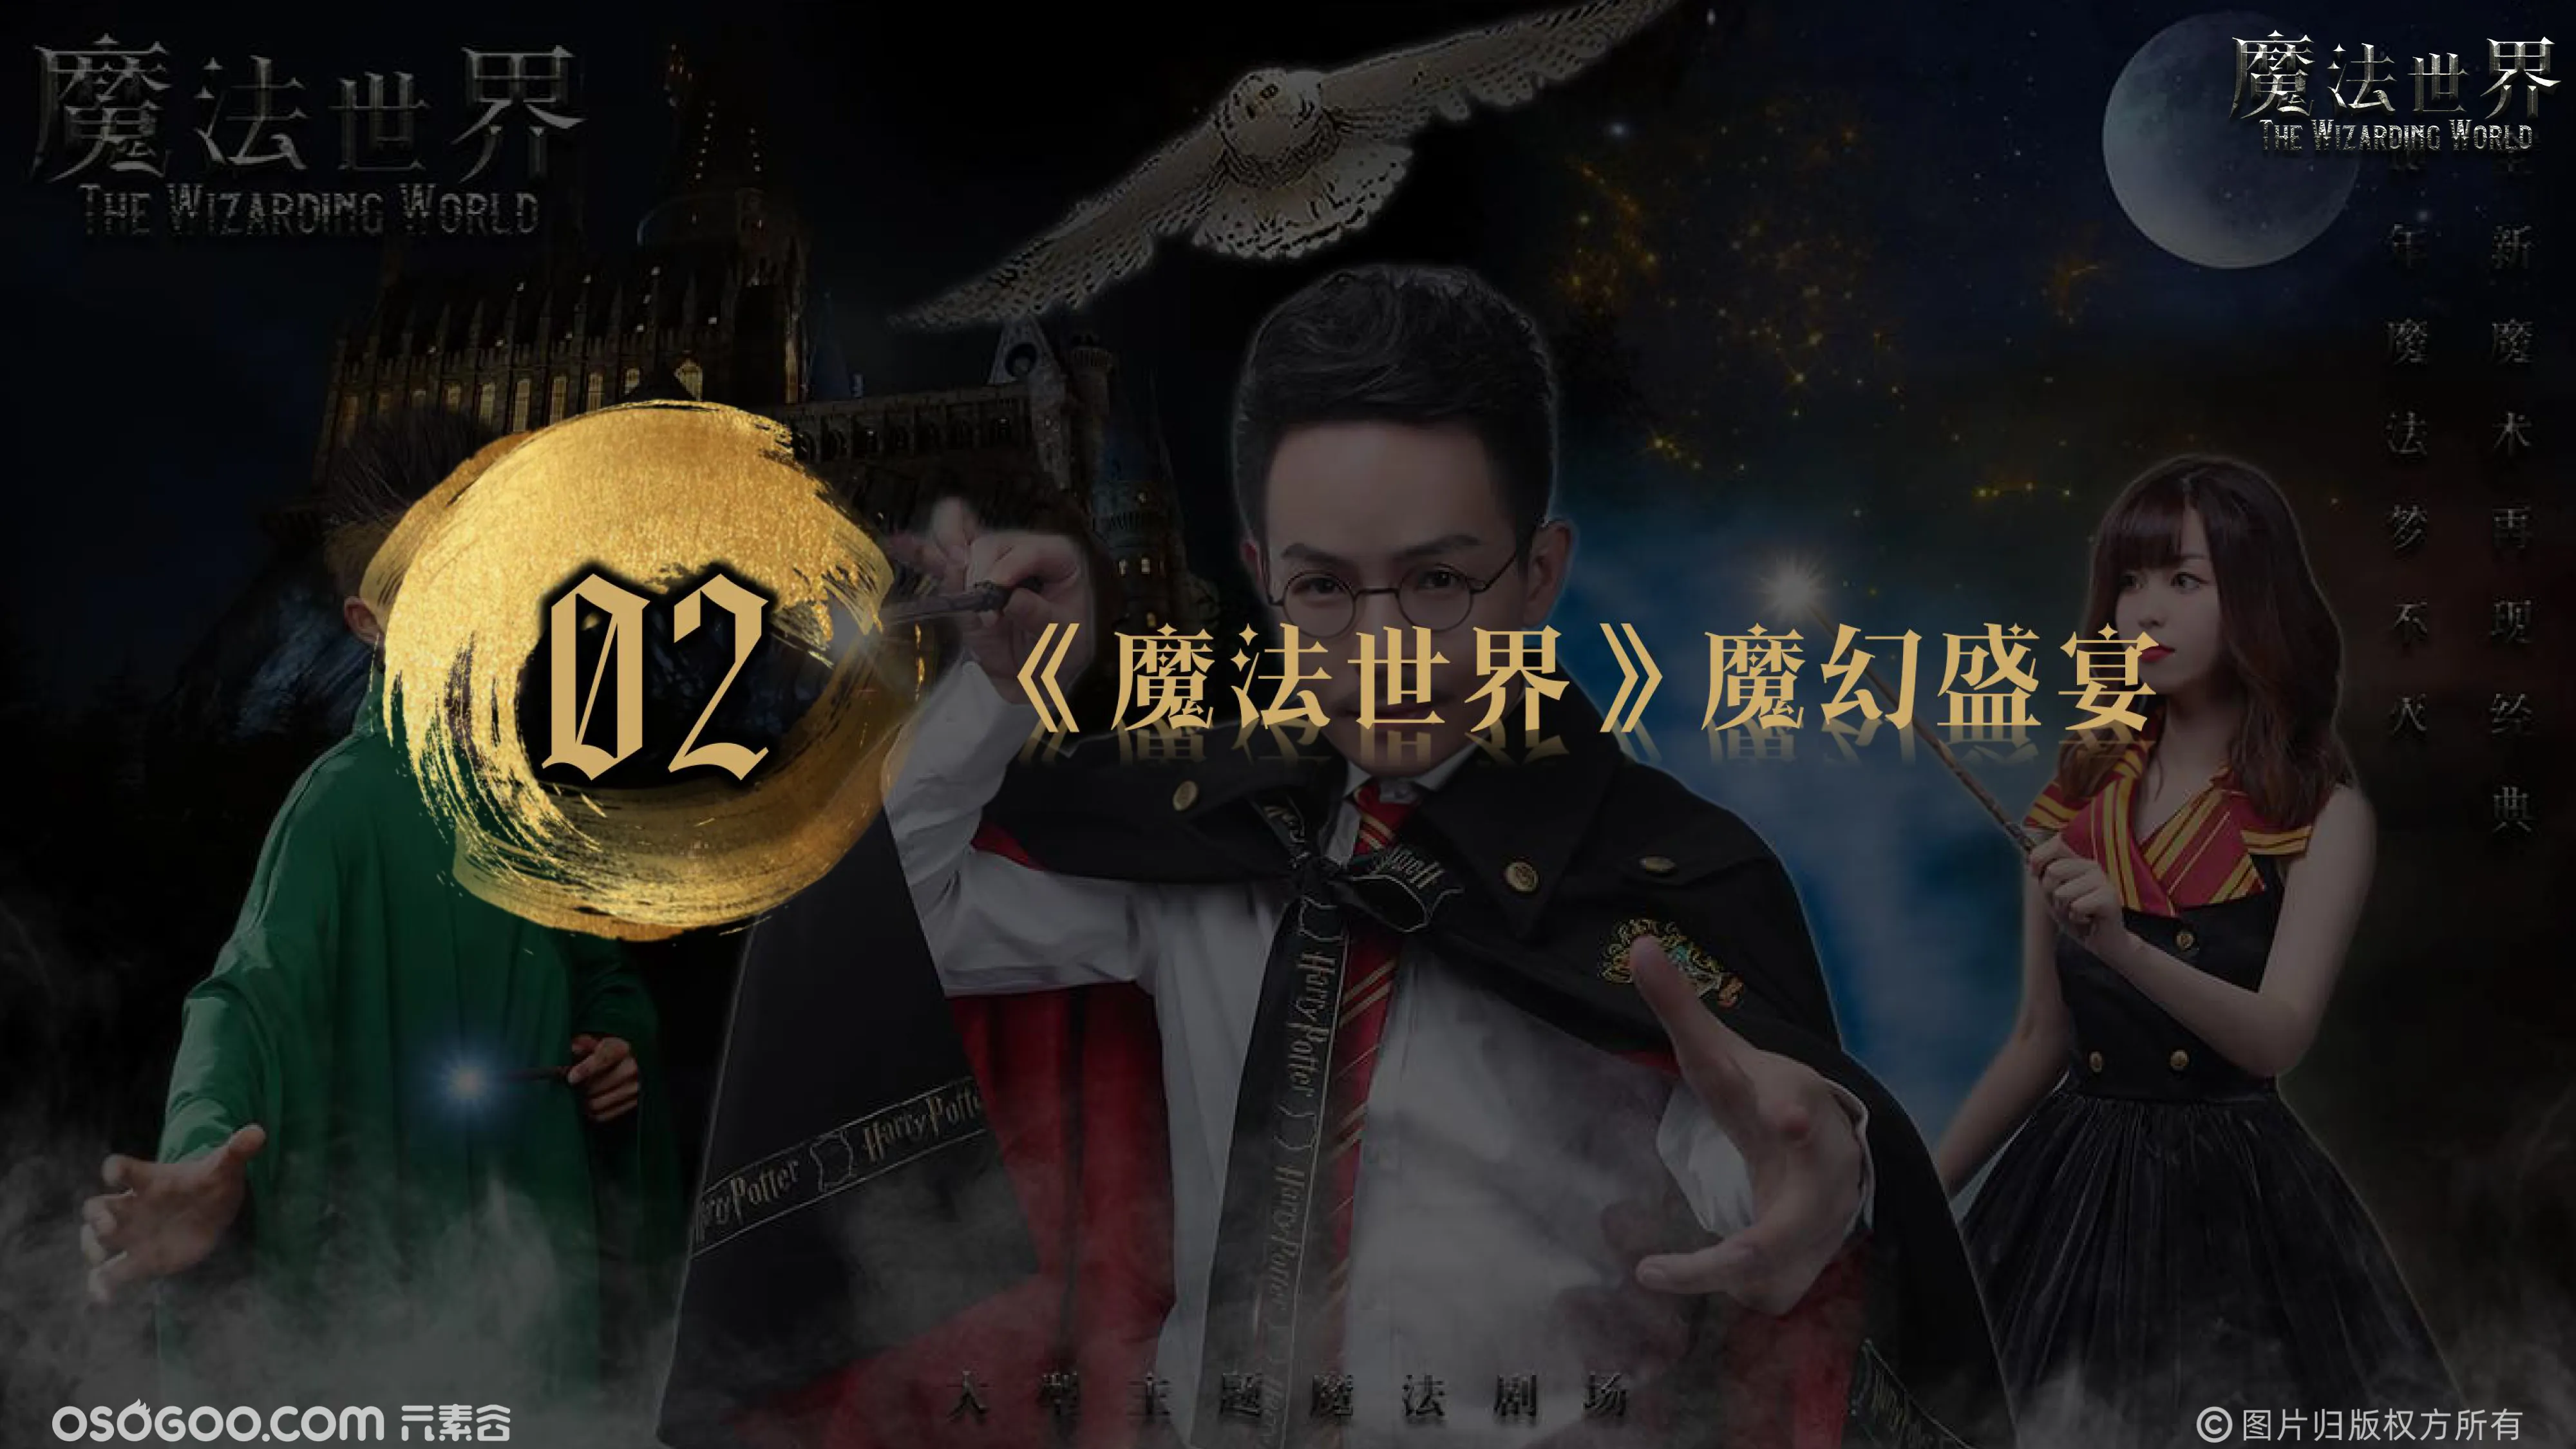 哈利波特《魔法世界》中国首创大型电影主题魔术秀